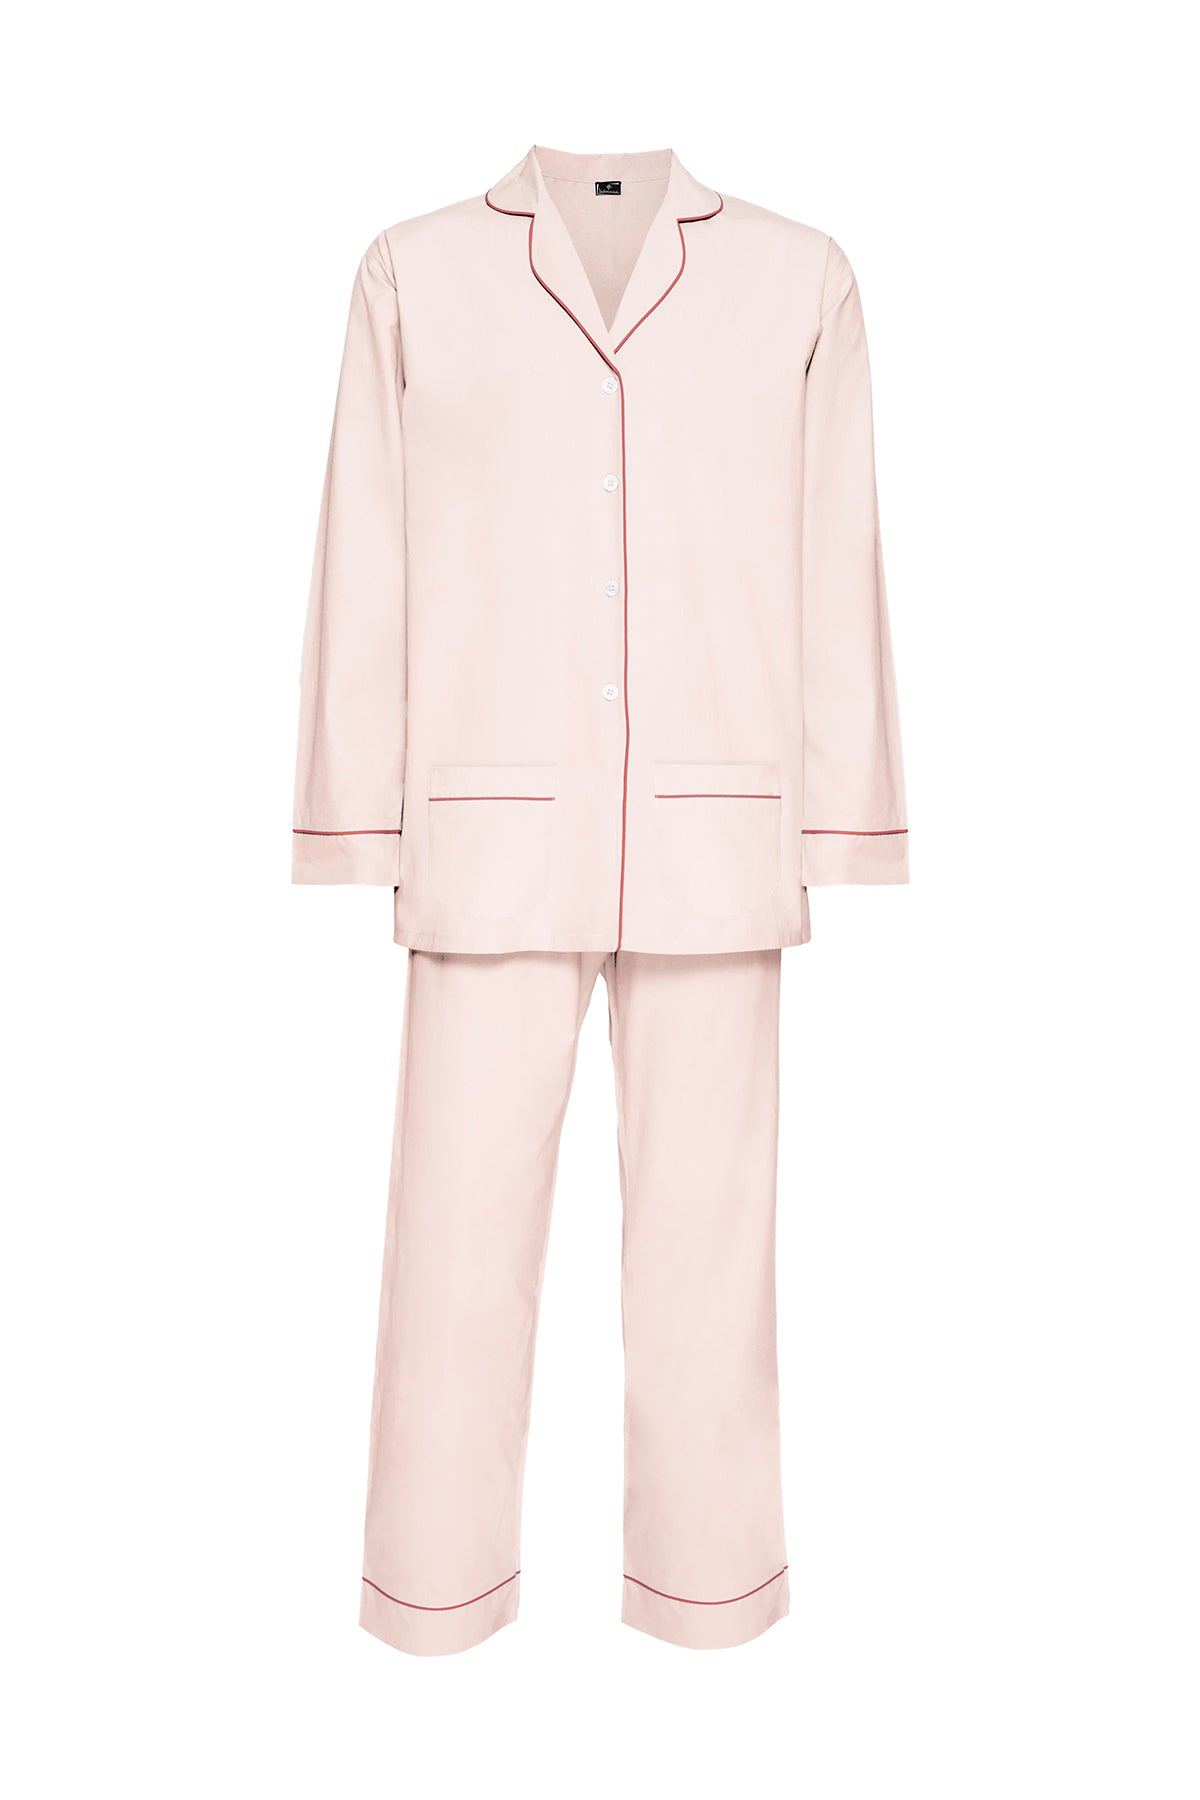 Women's Cotton Pyjamas - Pale Pink & Rose Piping